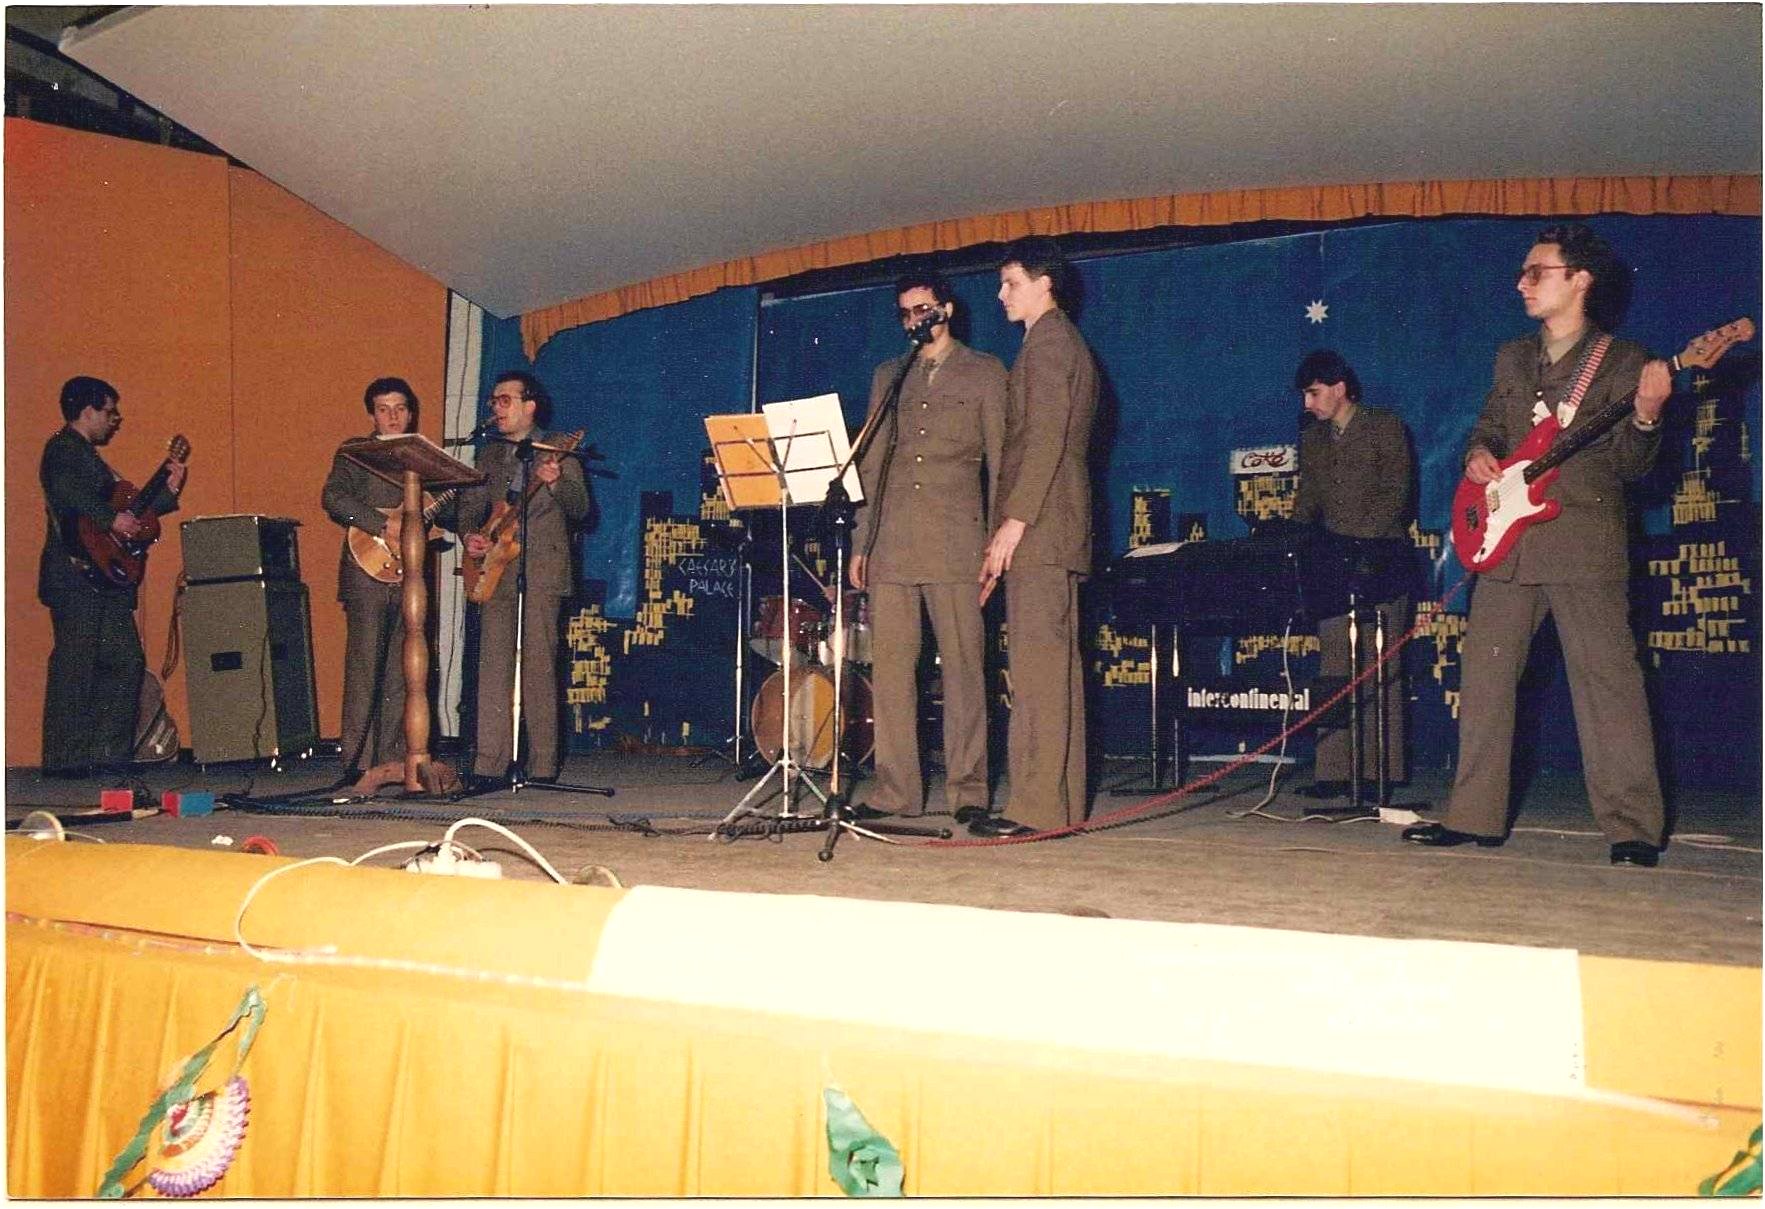 La nostra ultima esibizione con il gruppo datata 1987